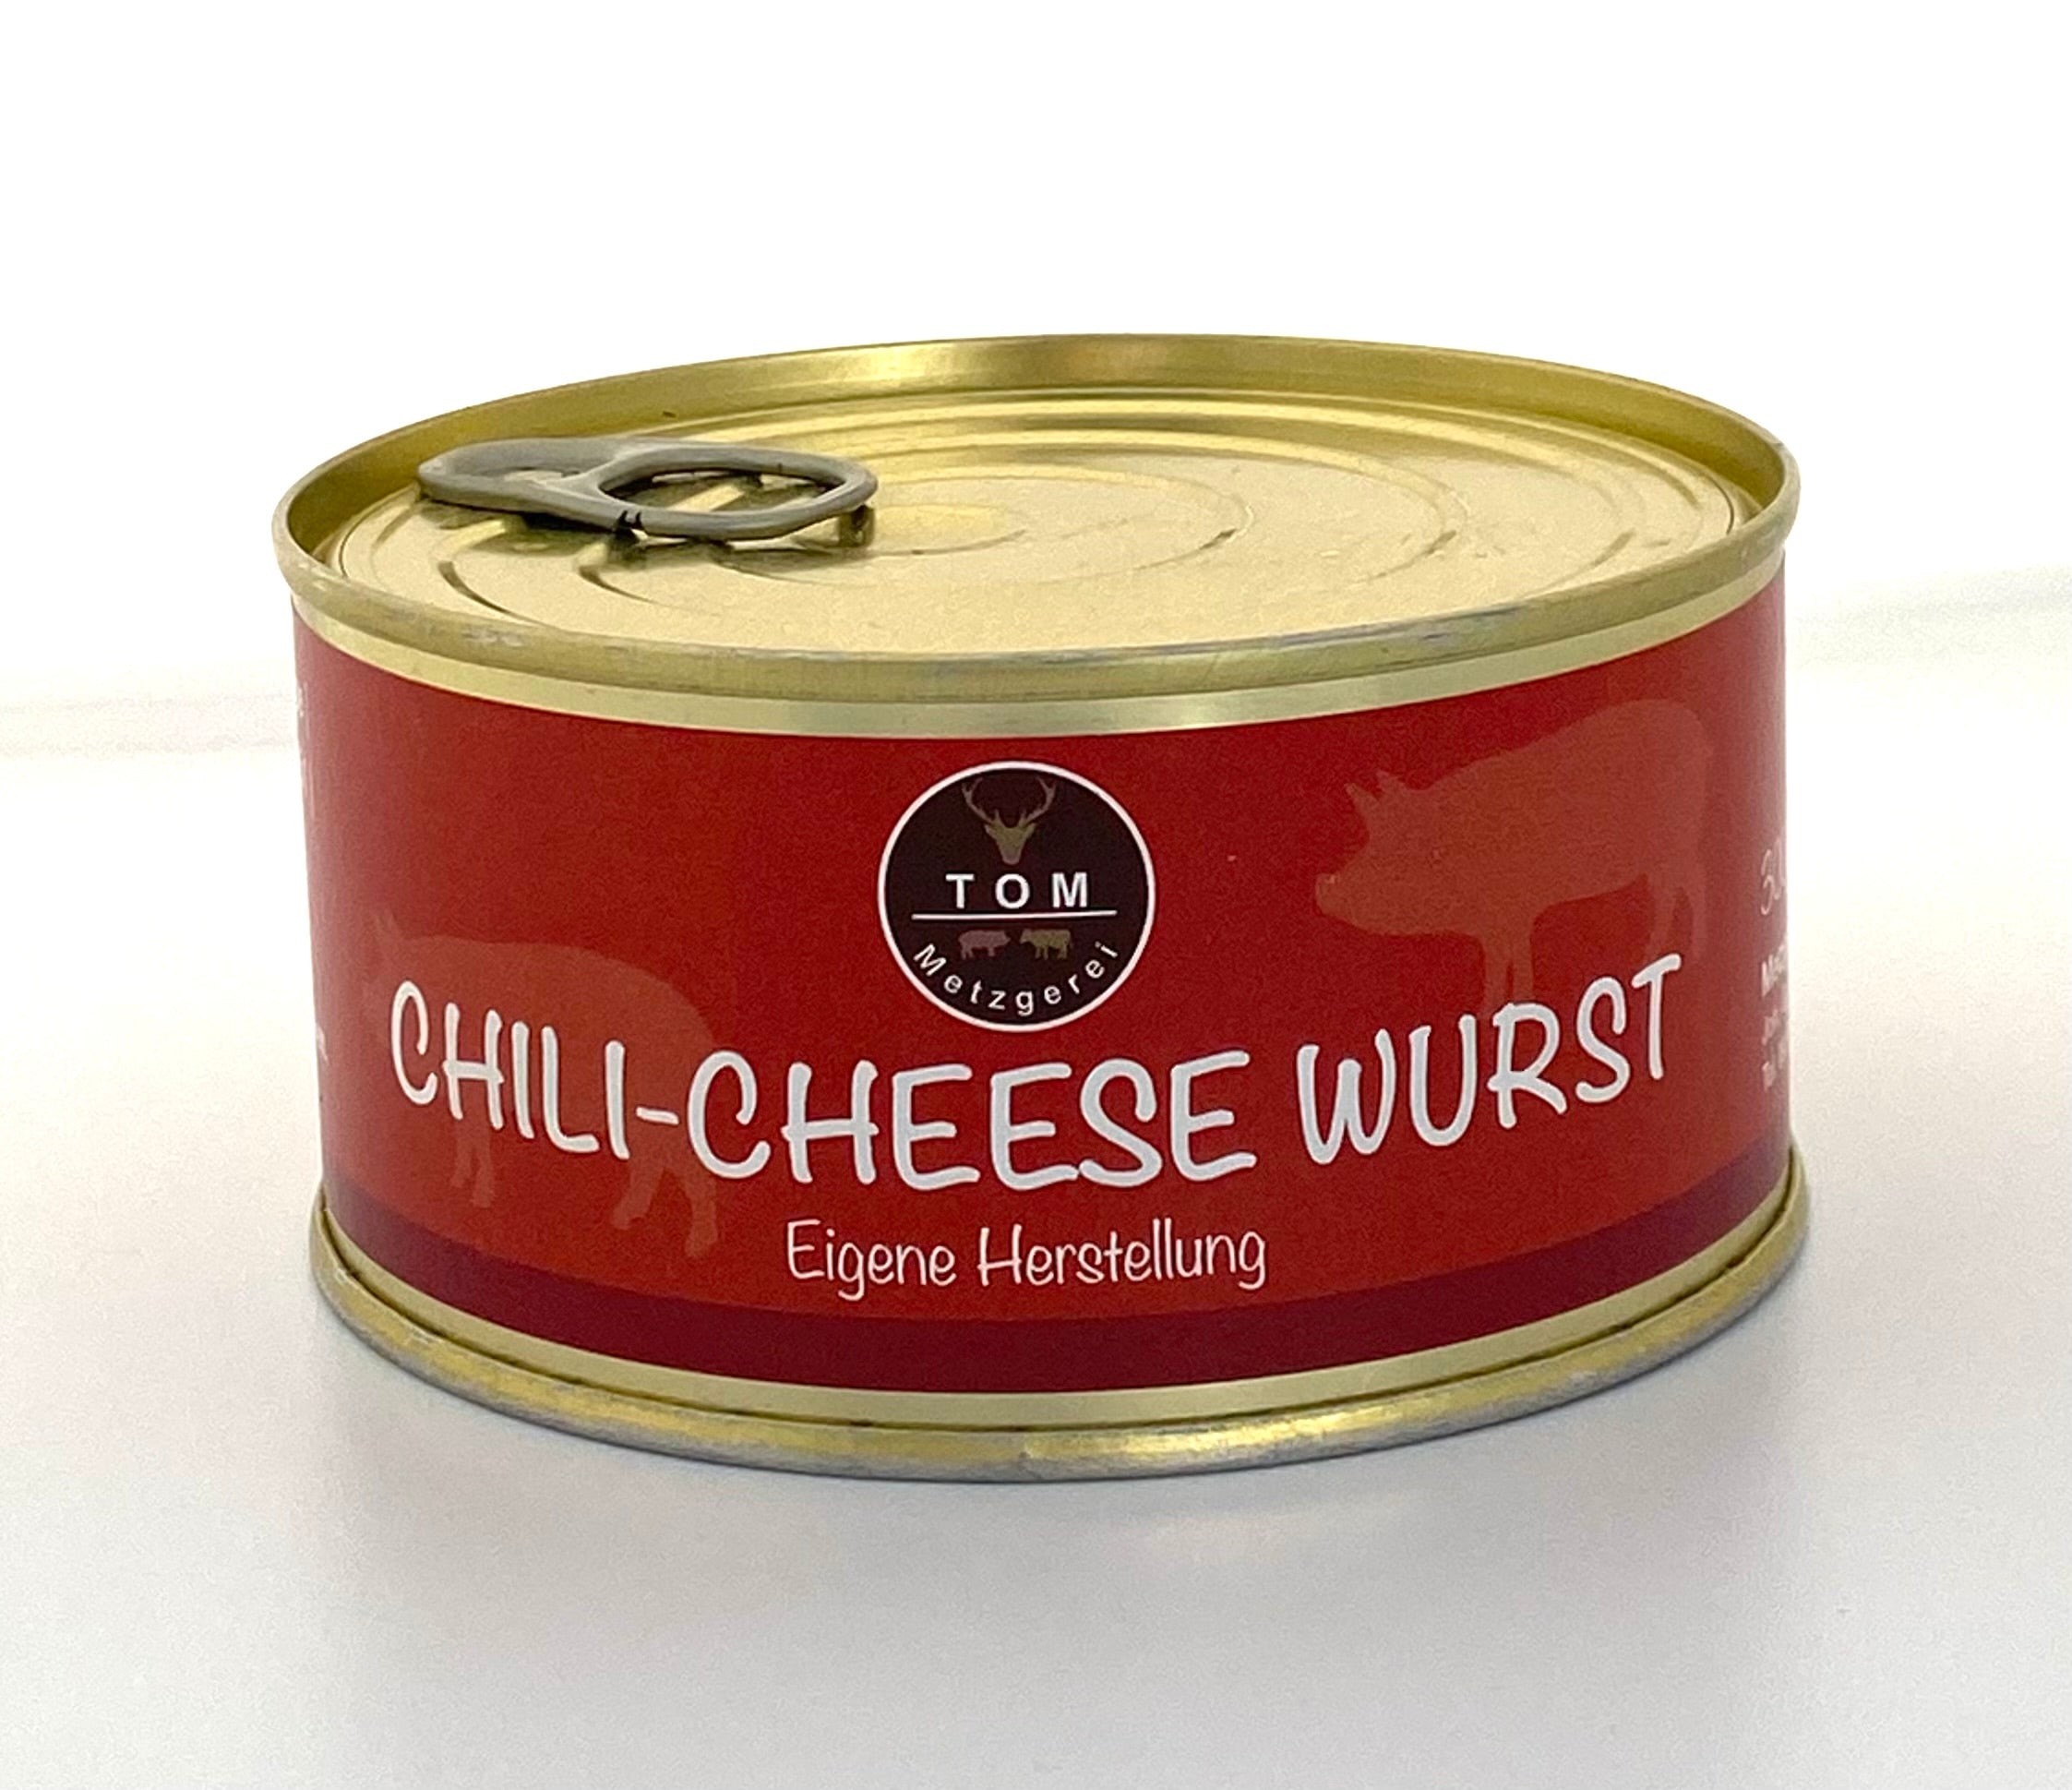 Chili Cheese Wurst